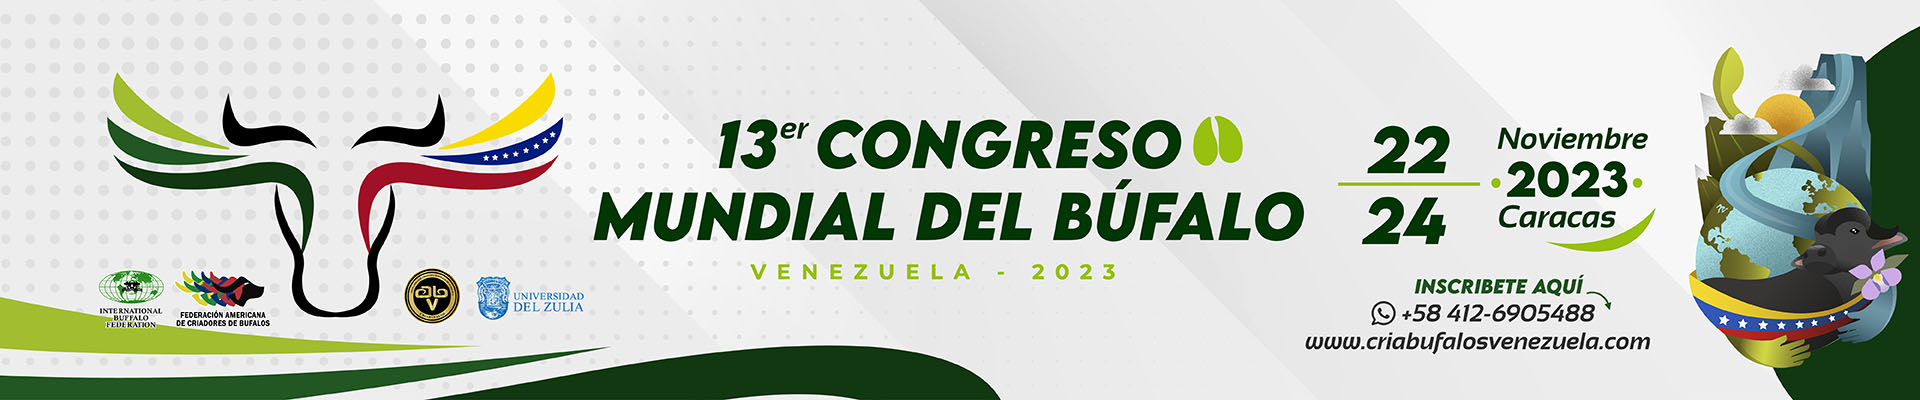 13 congreso mundial del bufalo 2023 caracas venezuela